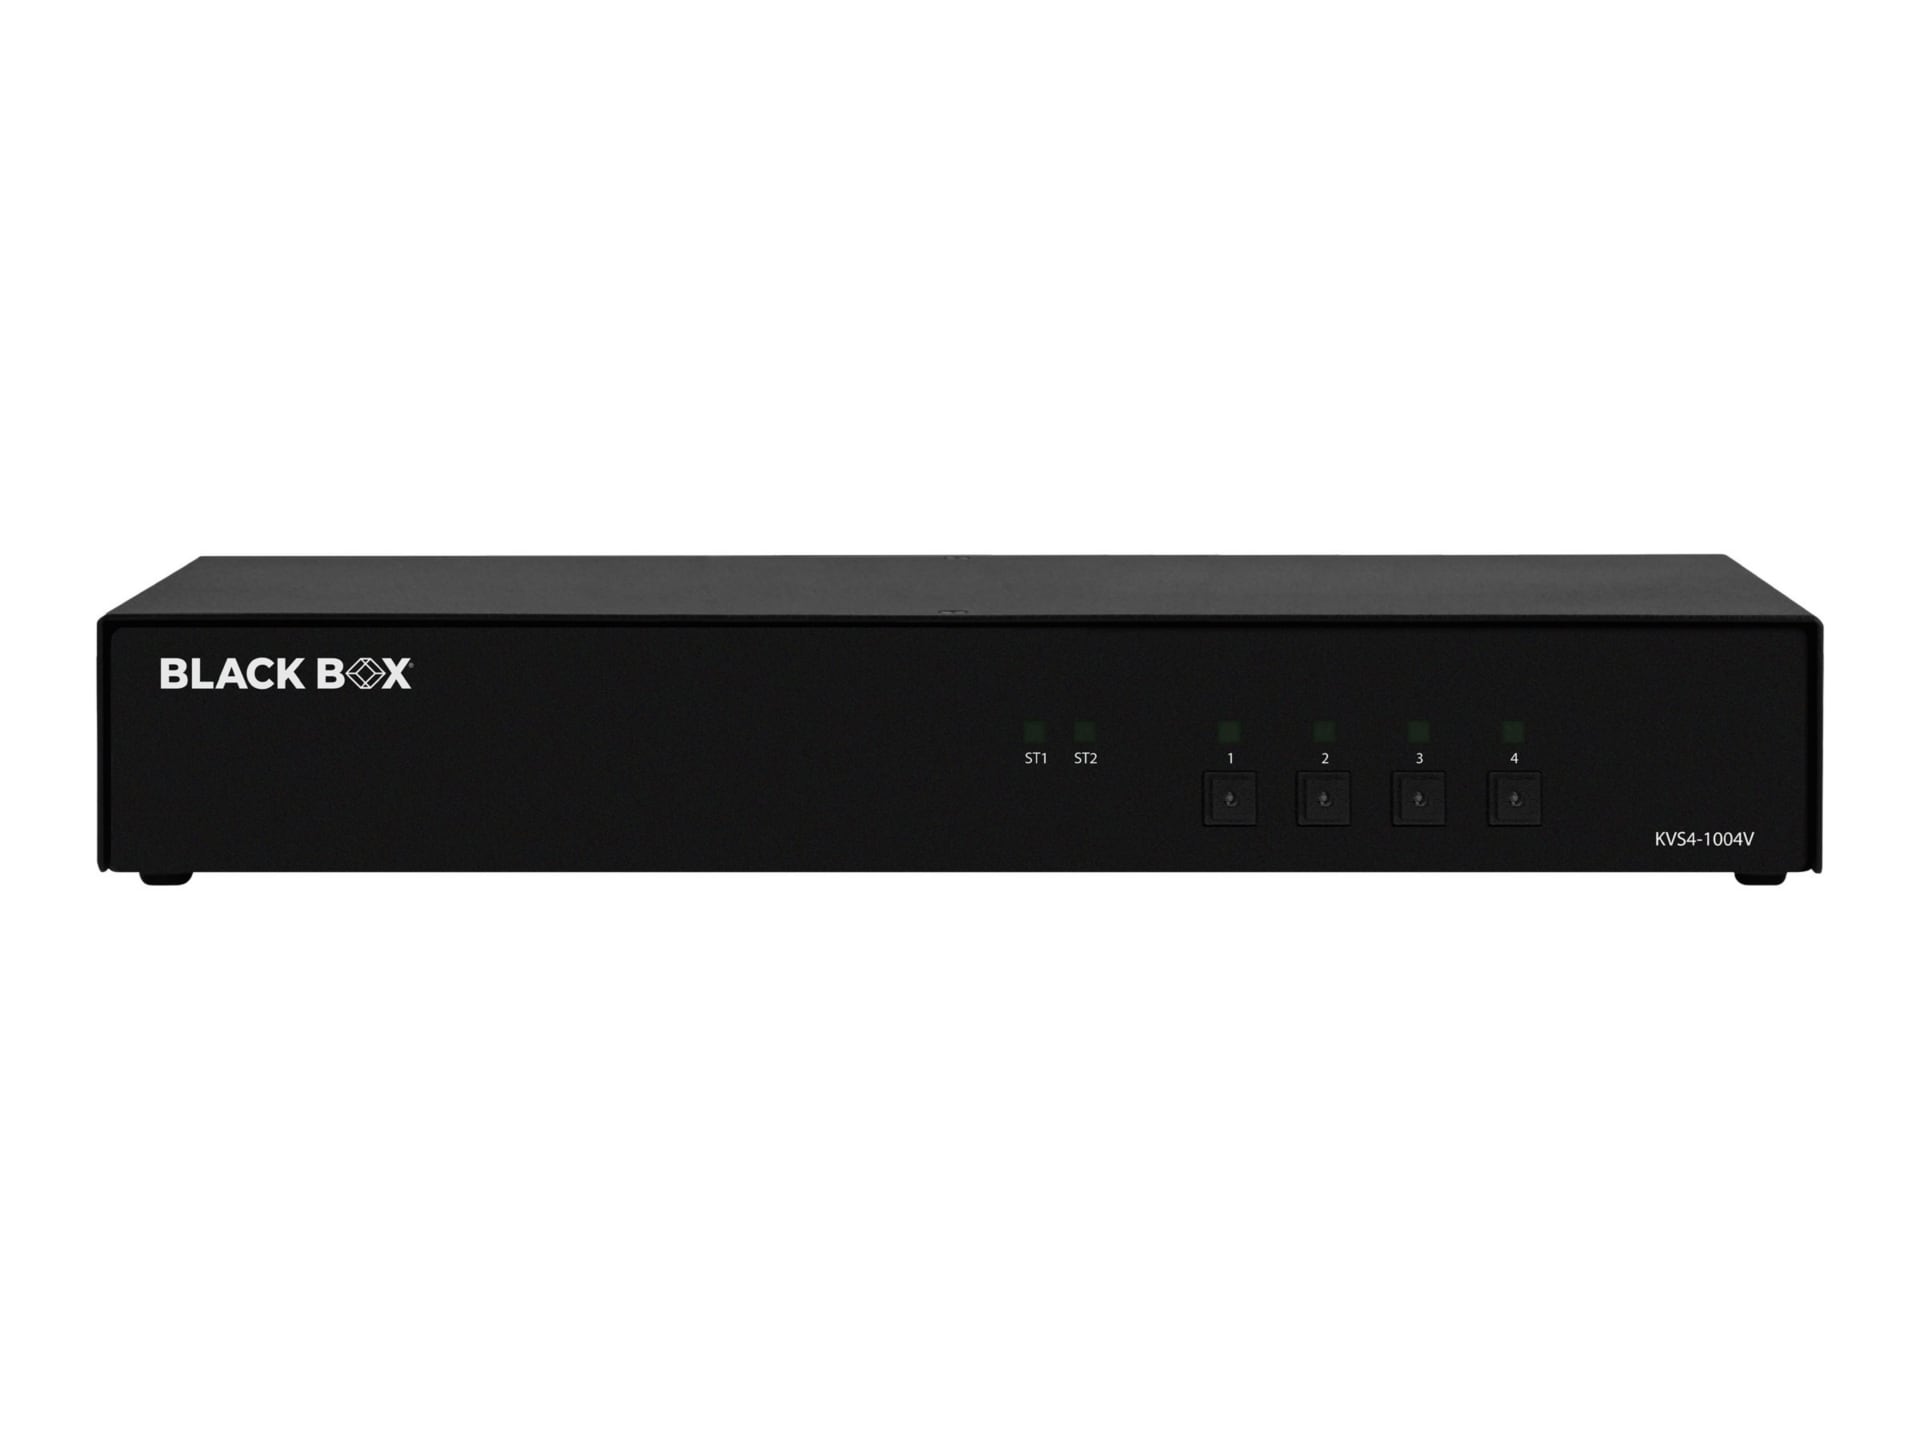 Black Box SECURE KVS4-1004V - KVM / audio switch - 4 ports - TAA Compliant